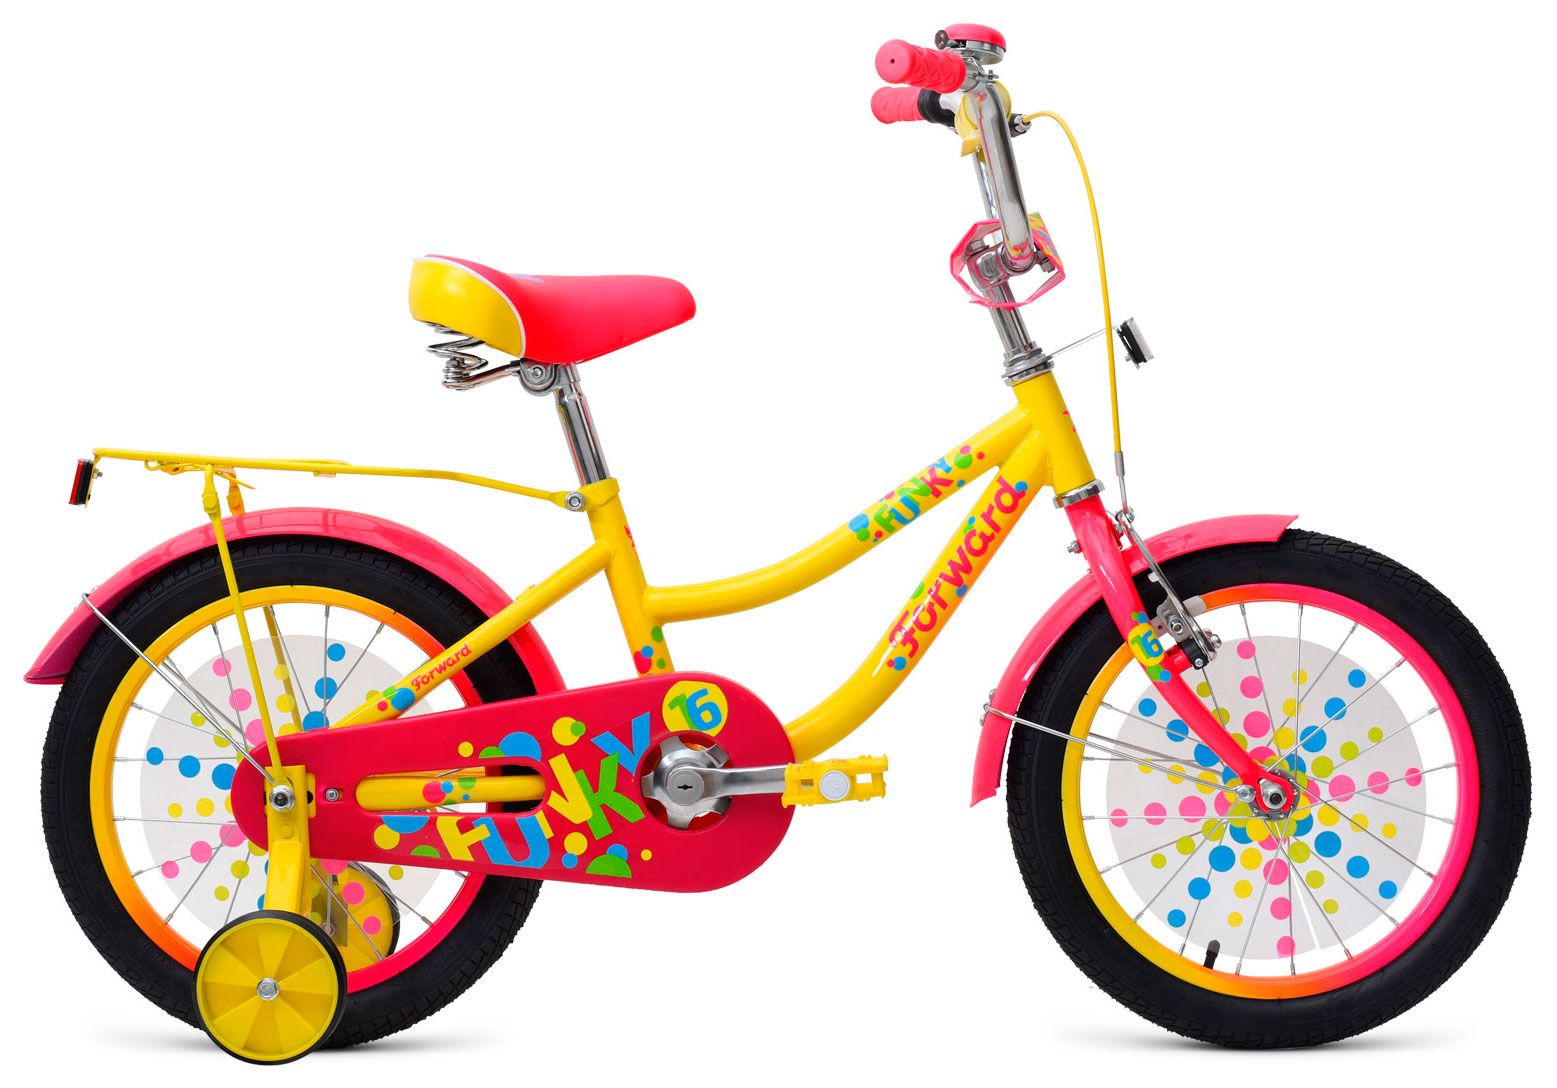  Отзывы о Трехколесный детский велосипед Forward Funky 16 2021